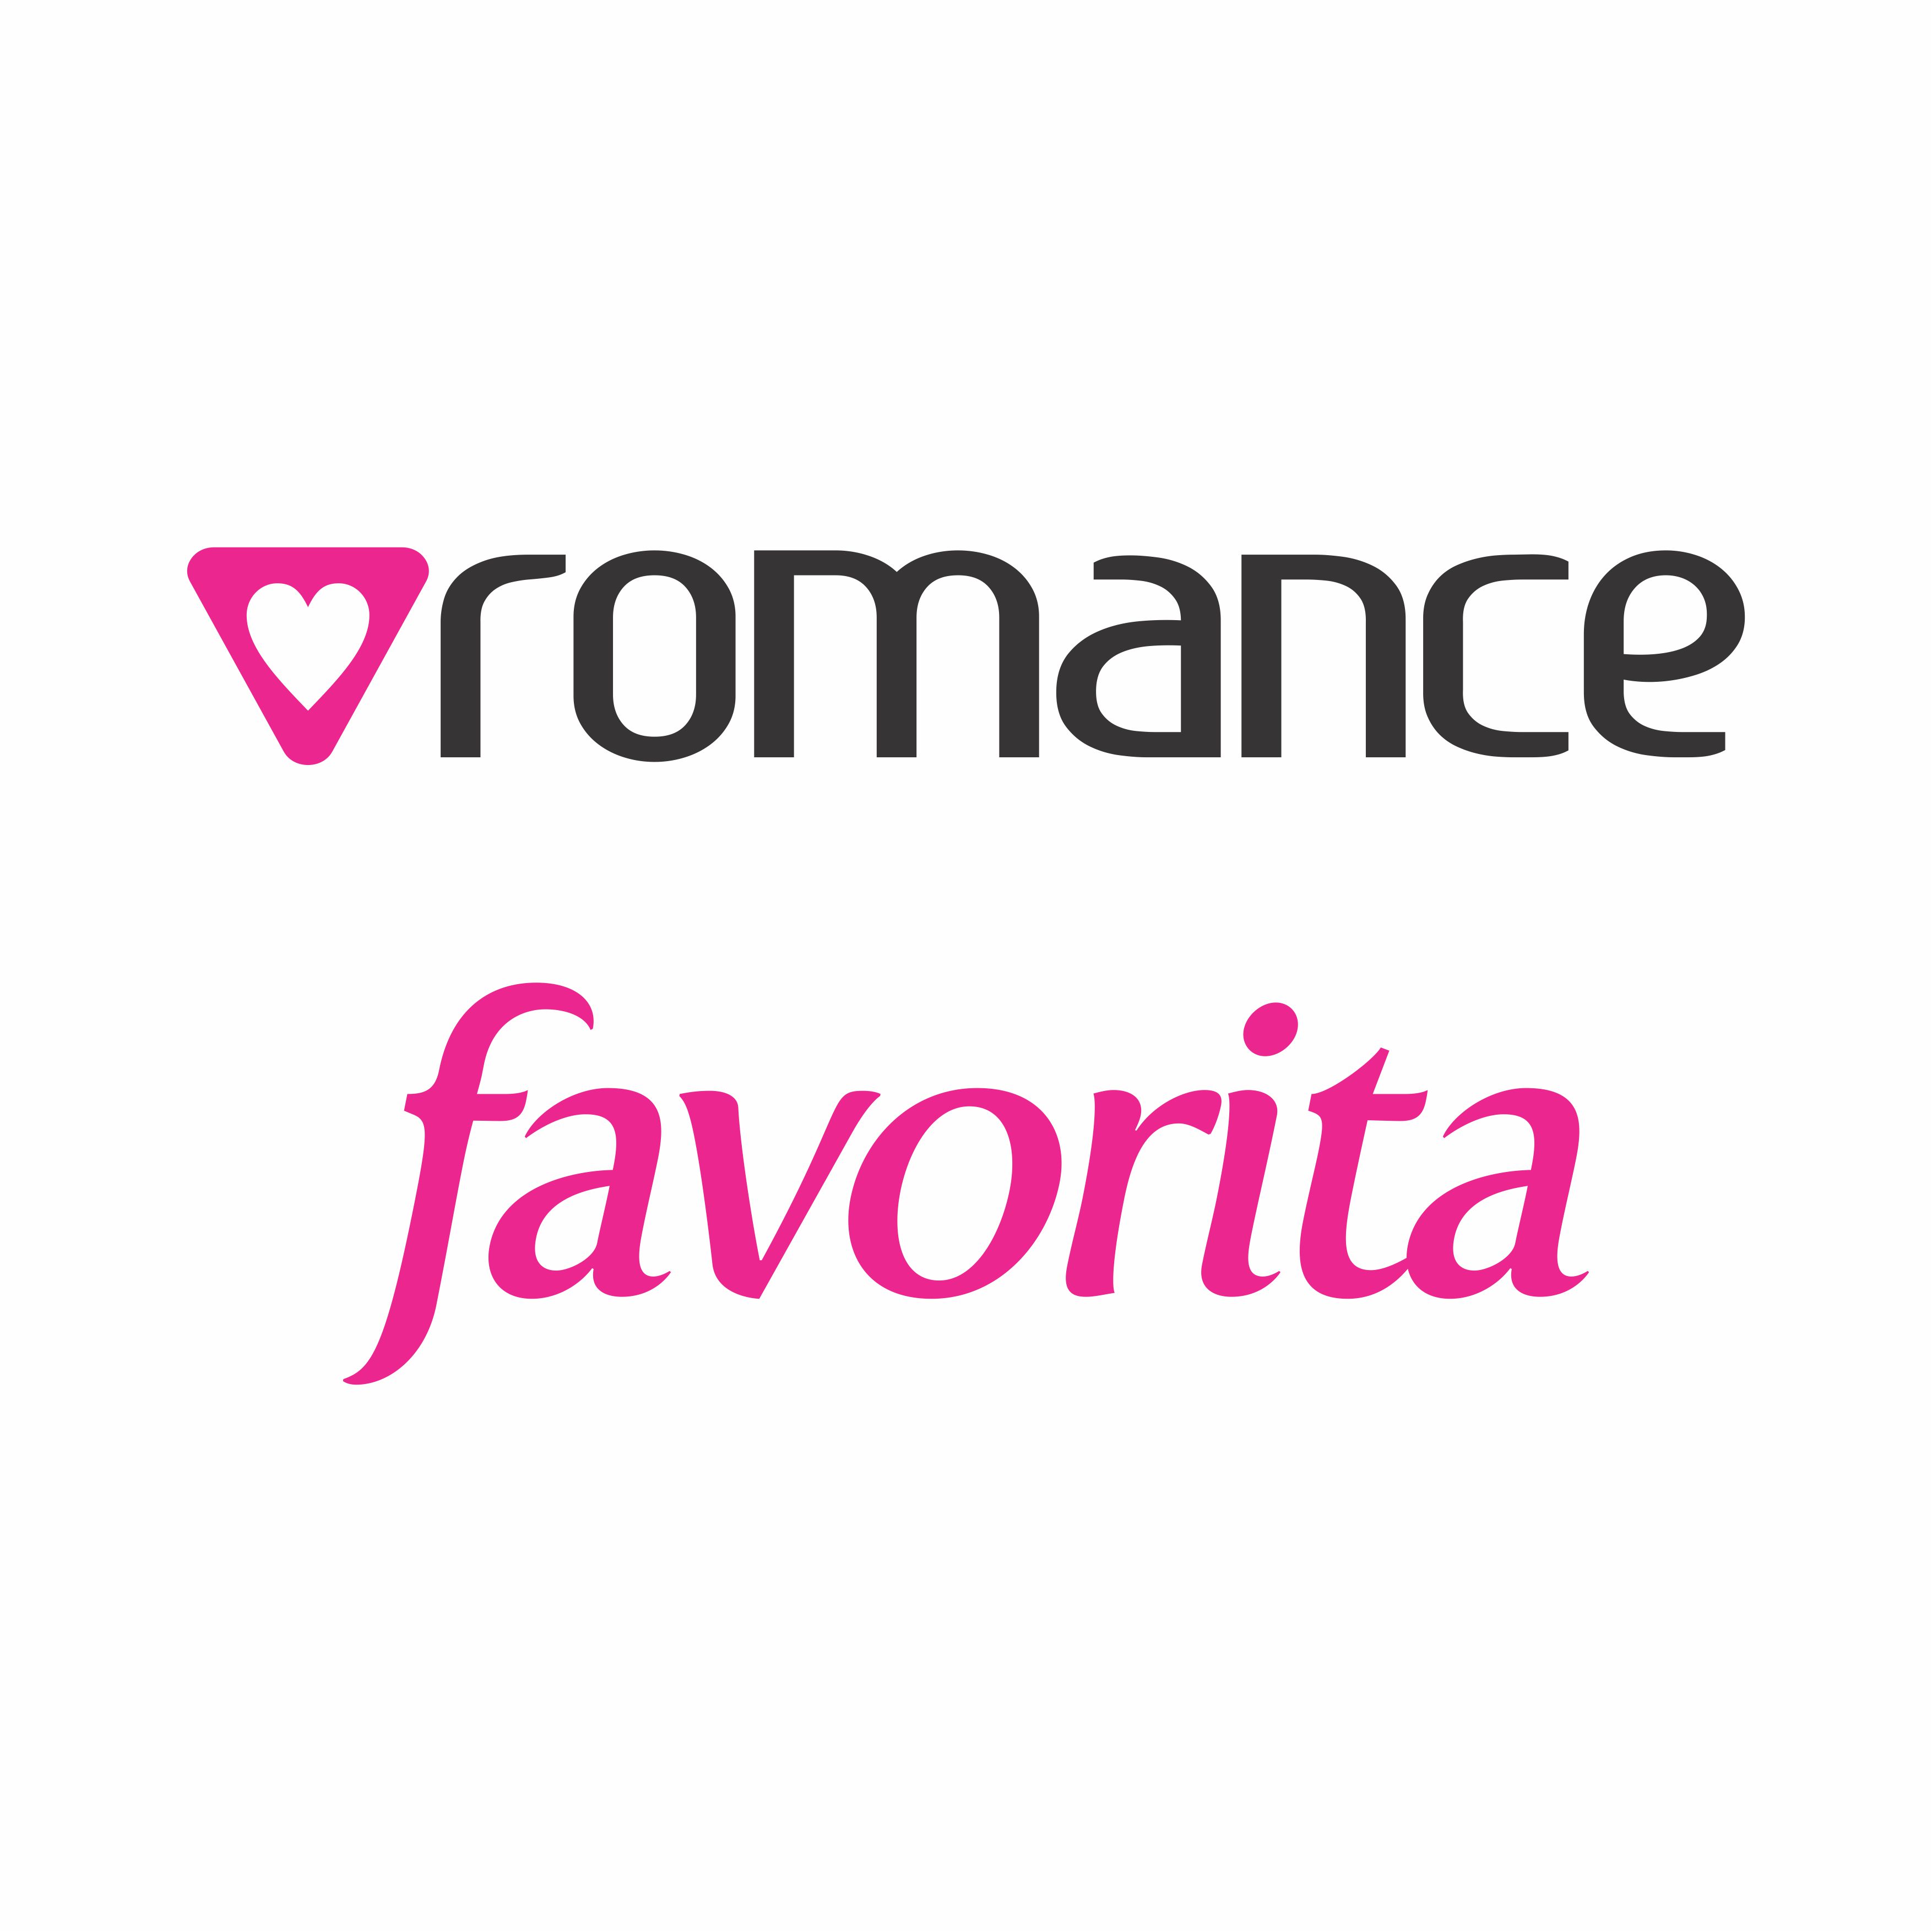 Descargar Logo Vectorizado Radio romance favorita Gratis